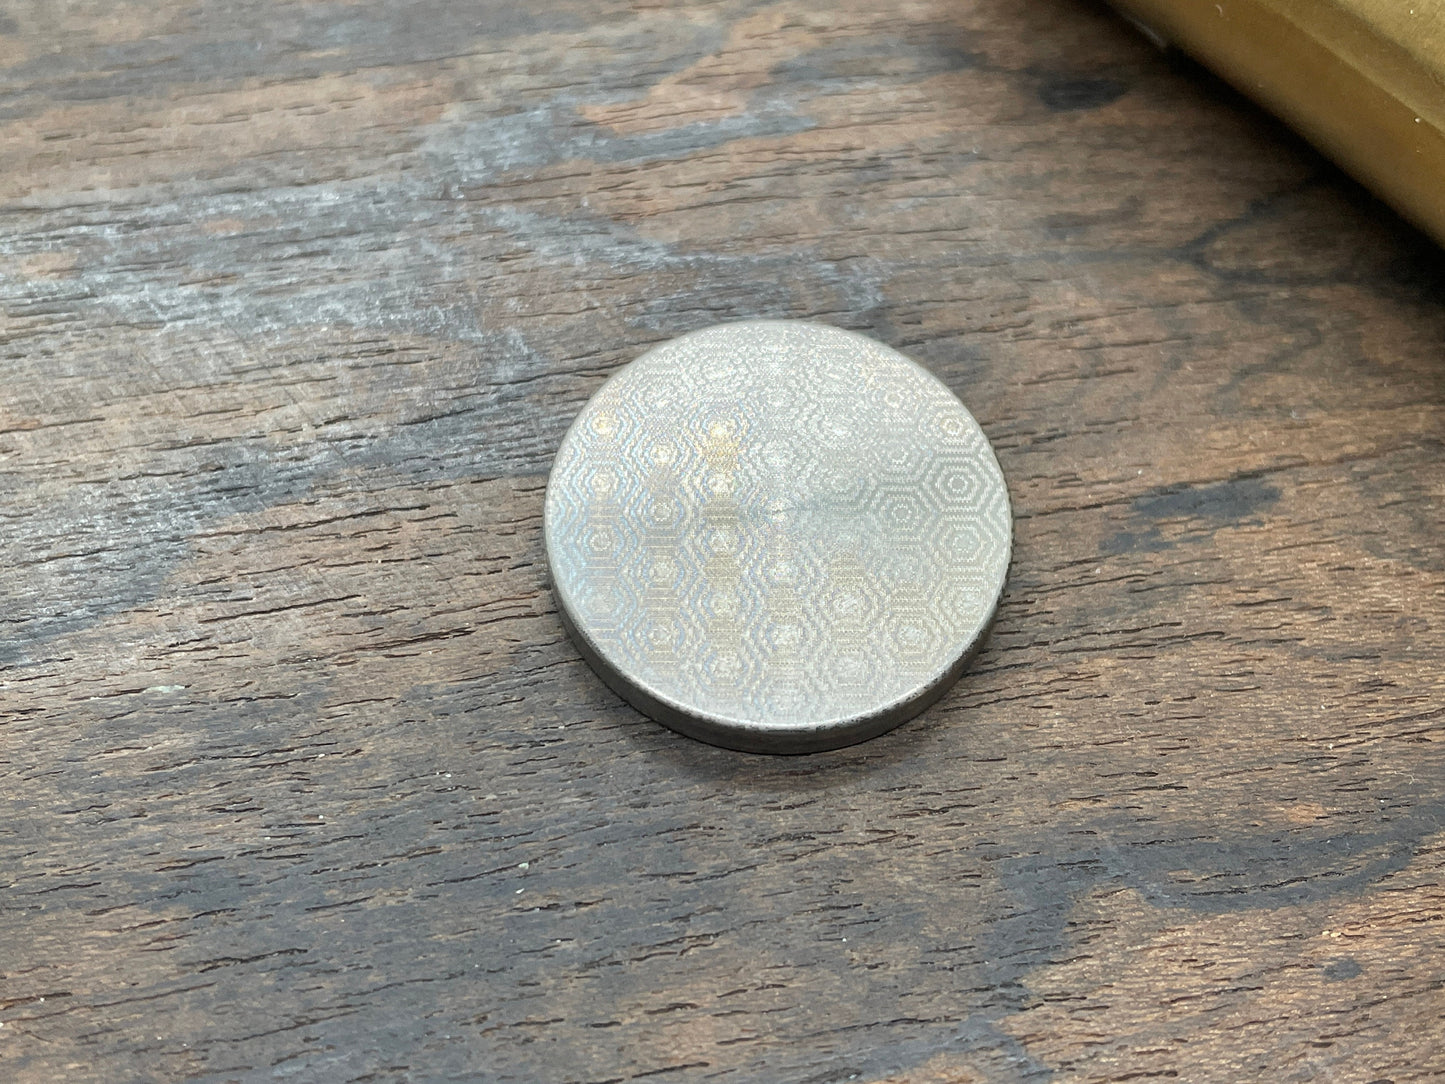 Deep engraved LIBRA Zodiac Titanium Coin for Billetspin Gambit